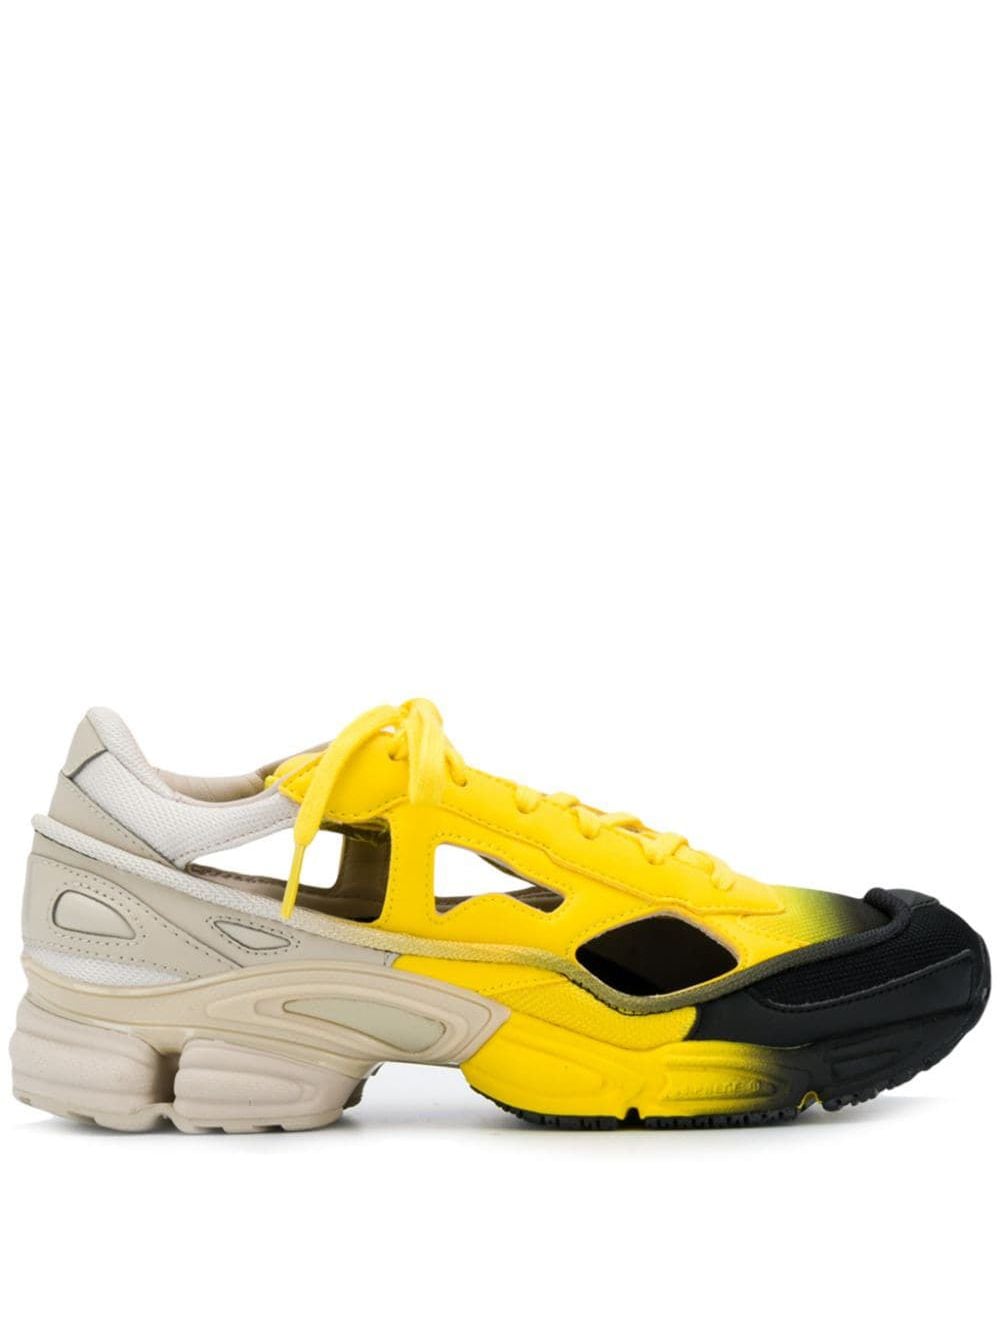 adidas x Raf Simons Ozweego Replicant sneakers - Yellow von adidas